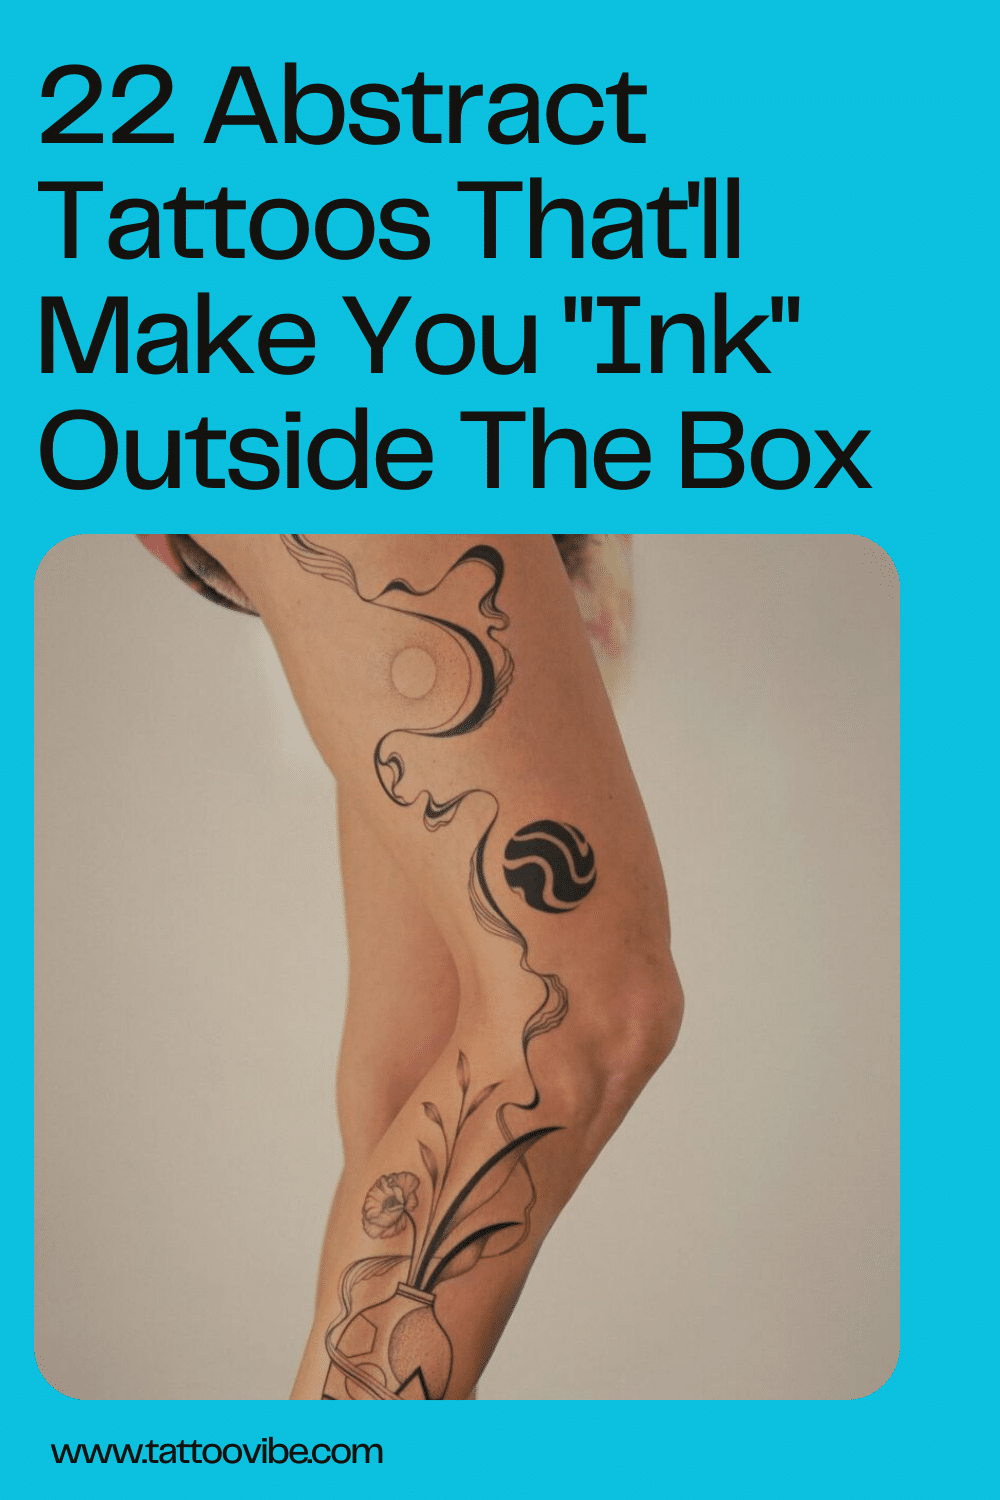 22 Abstrakte Tattoos, die Sie außerhalb der Box "tuschen" lassen
